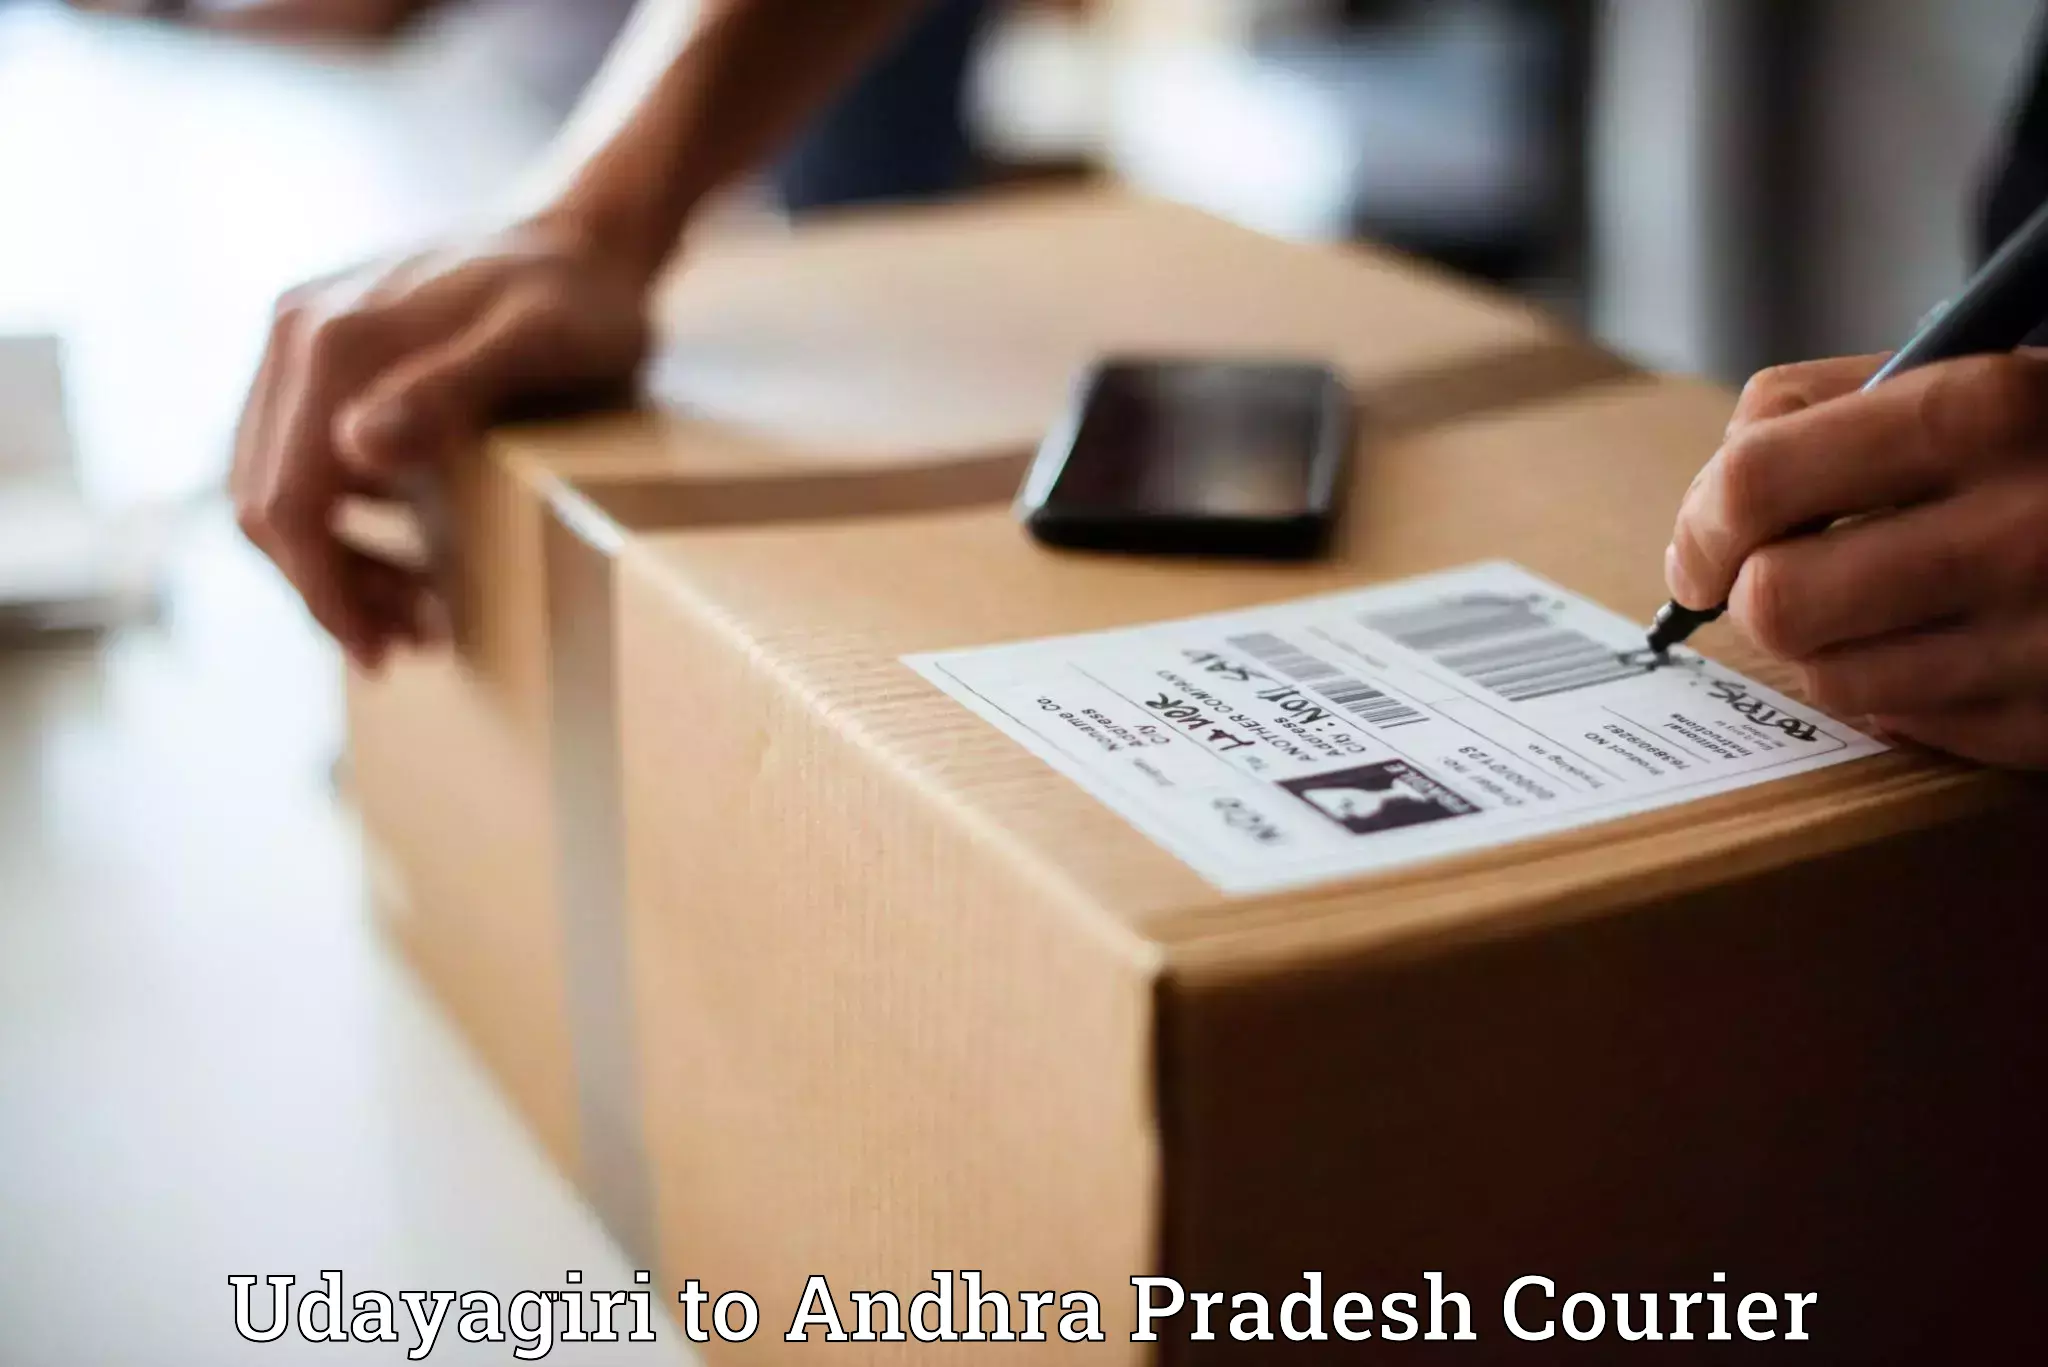 E-commerce logistics support Udayagiri to Samalkot